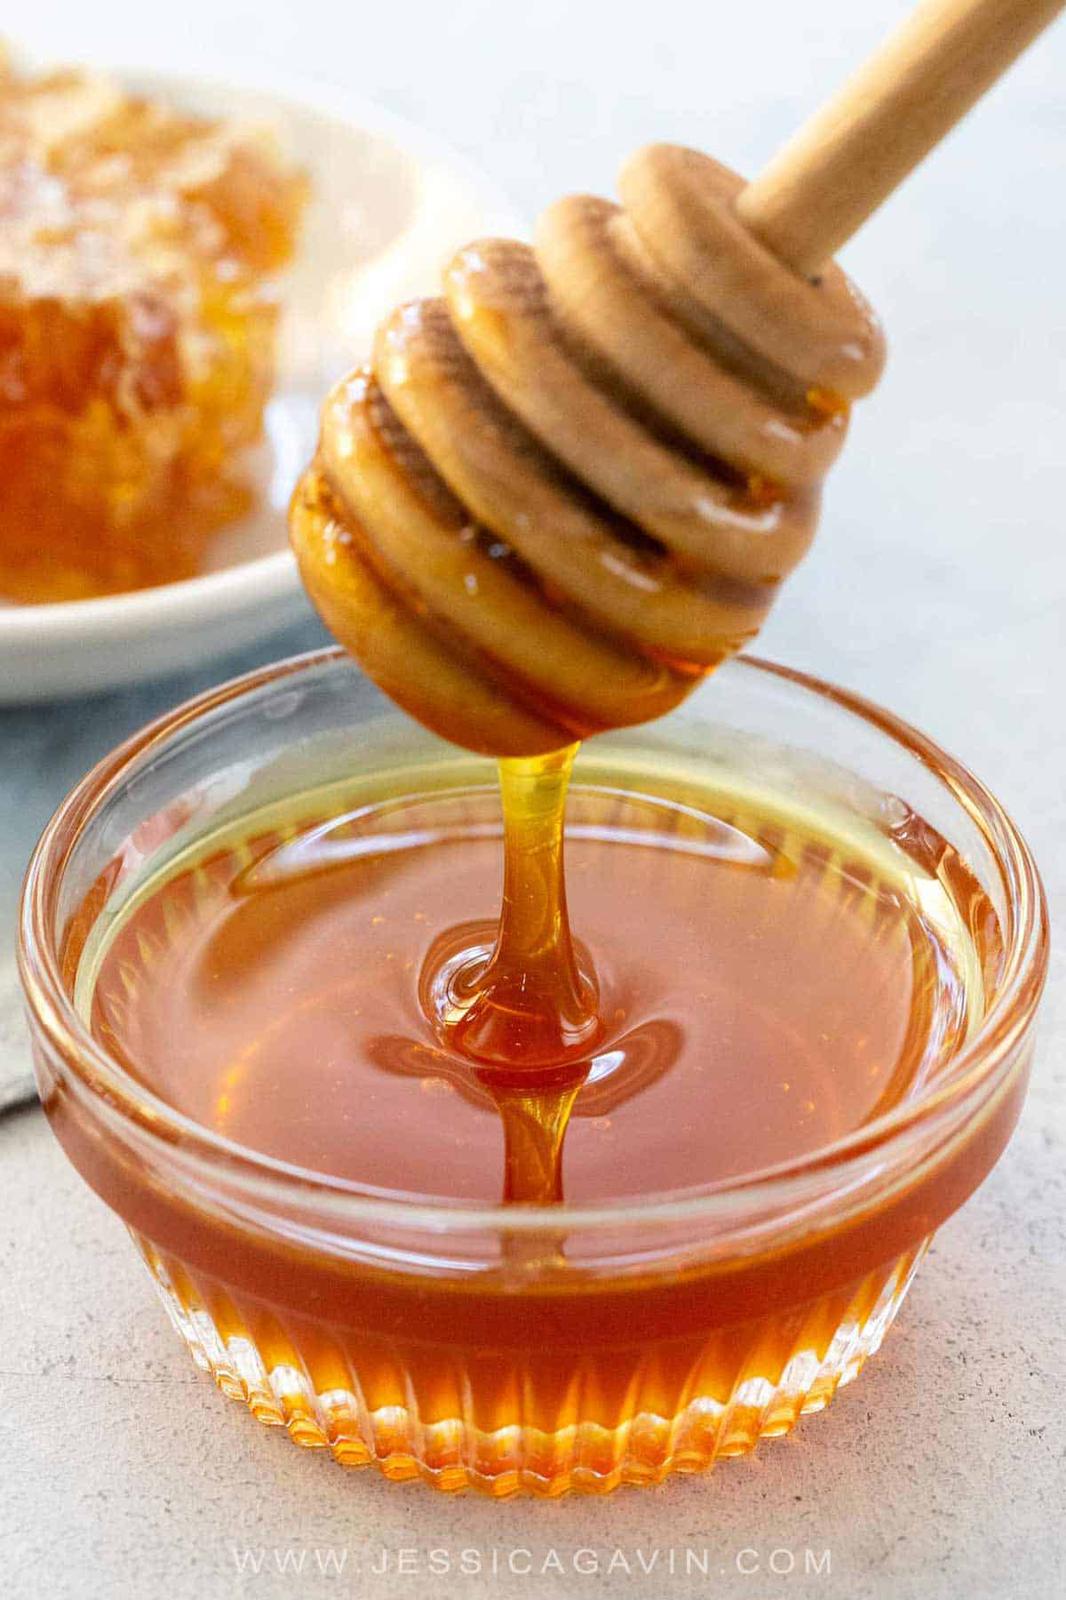 مستشارة التغذية بـ ” معجزة الشفاء " تكشف عن أهمية العسل  لمكافحة القولون العصبي